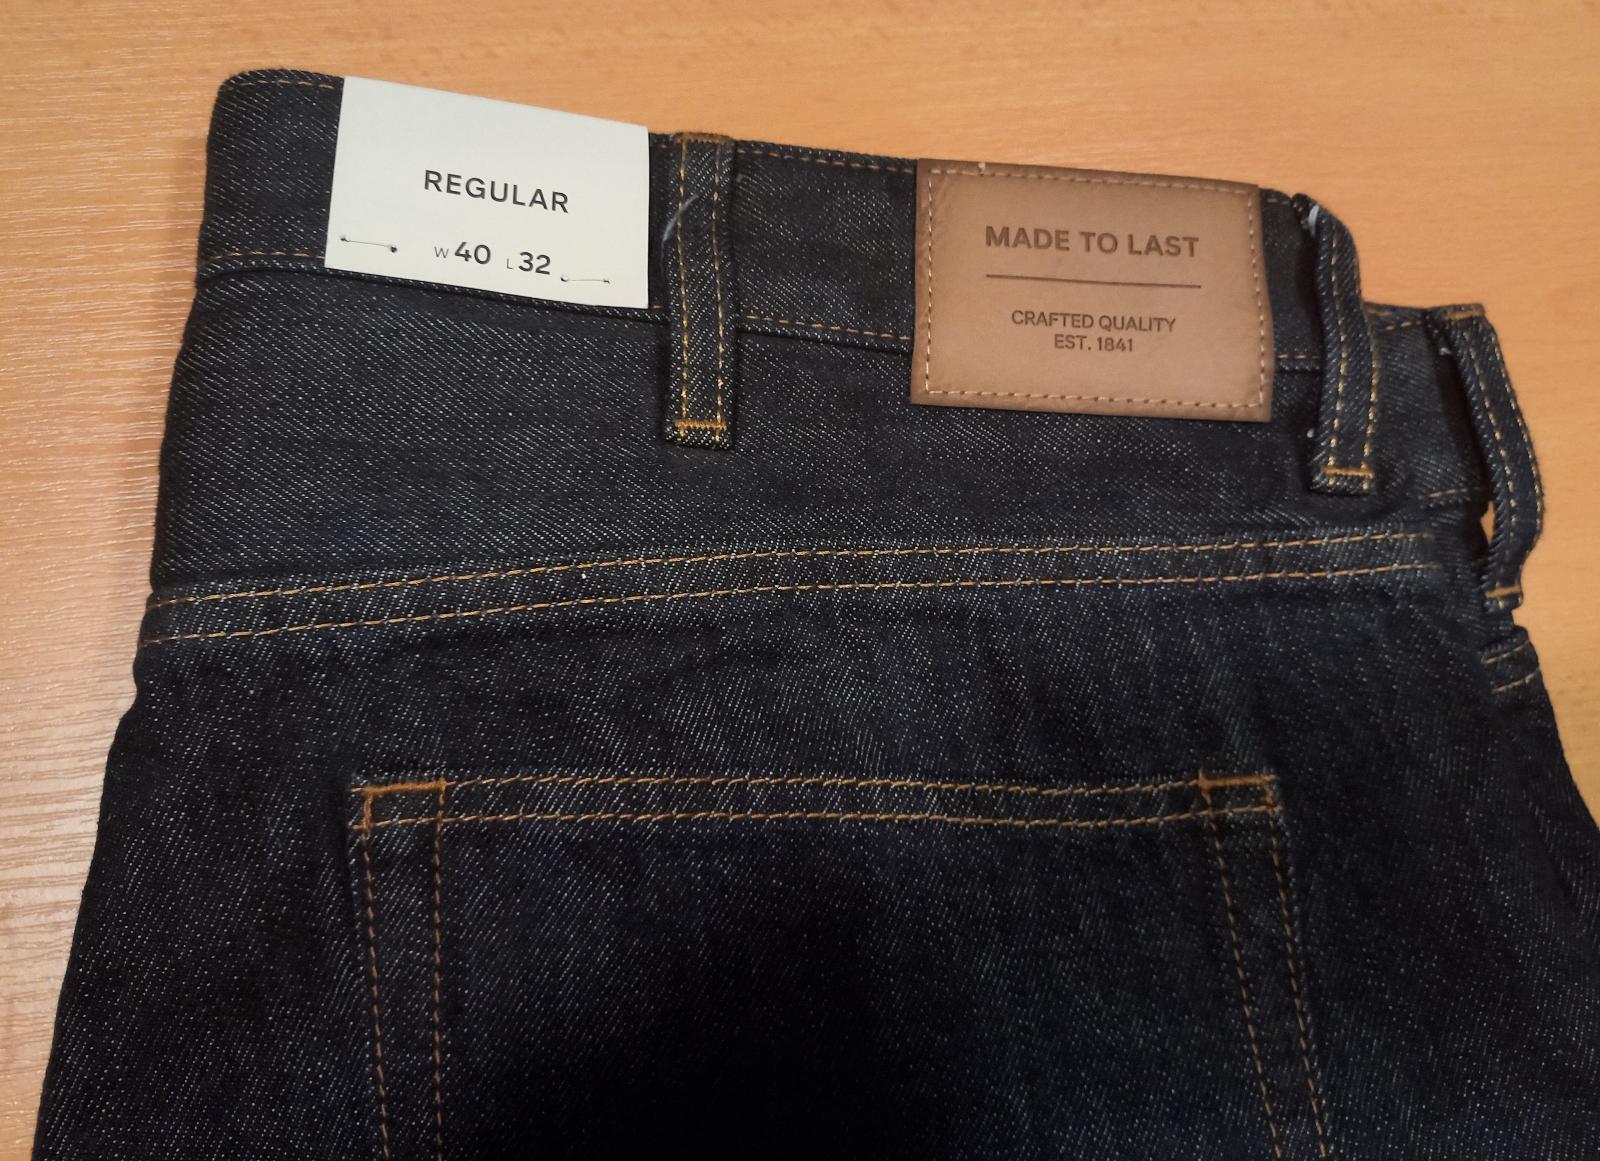 Pánske nohavice - jeans - veľ. 40/32 - Pánske oblečenie